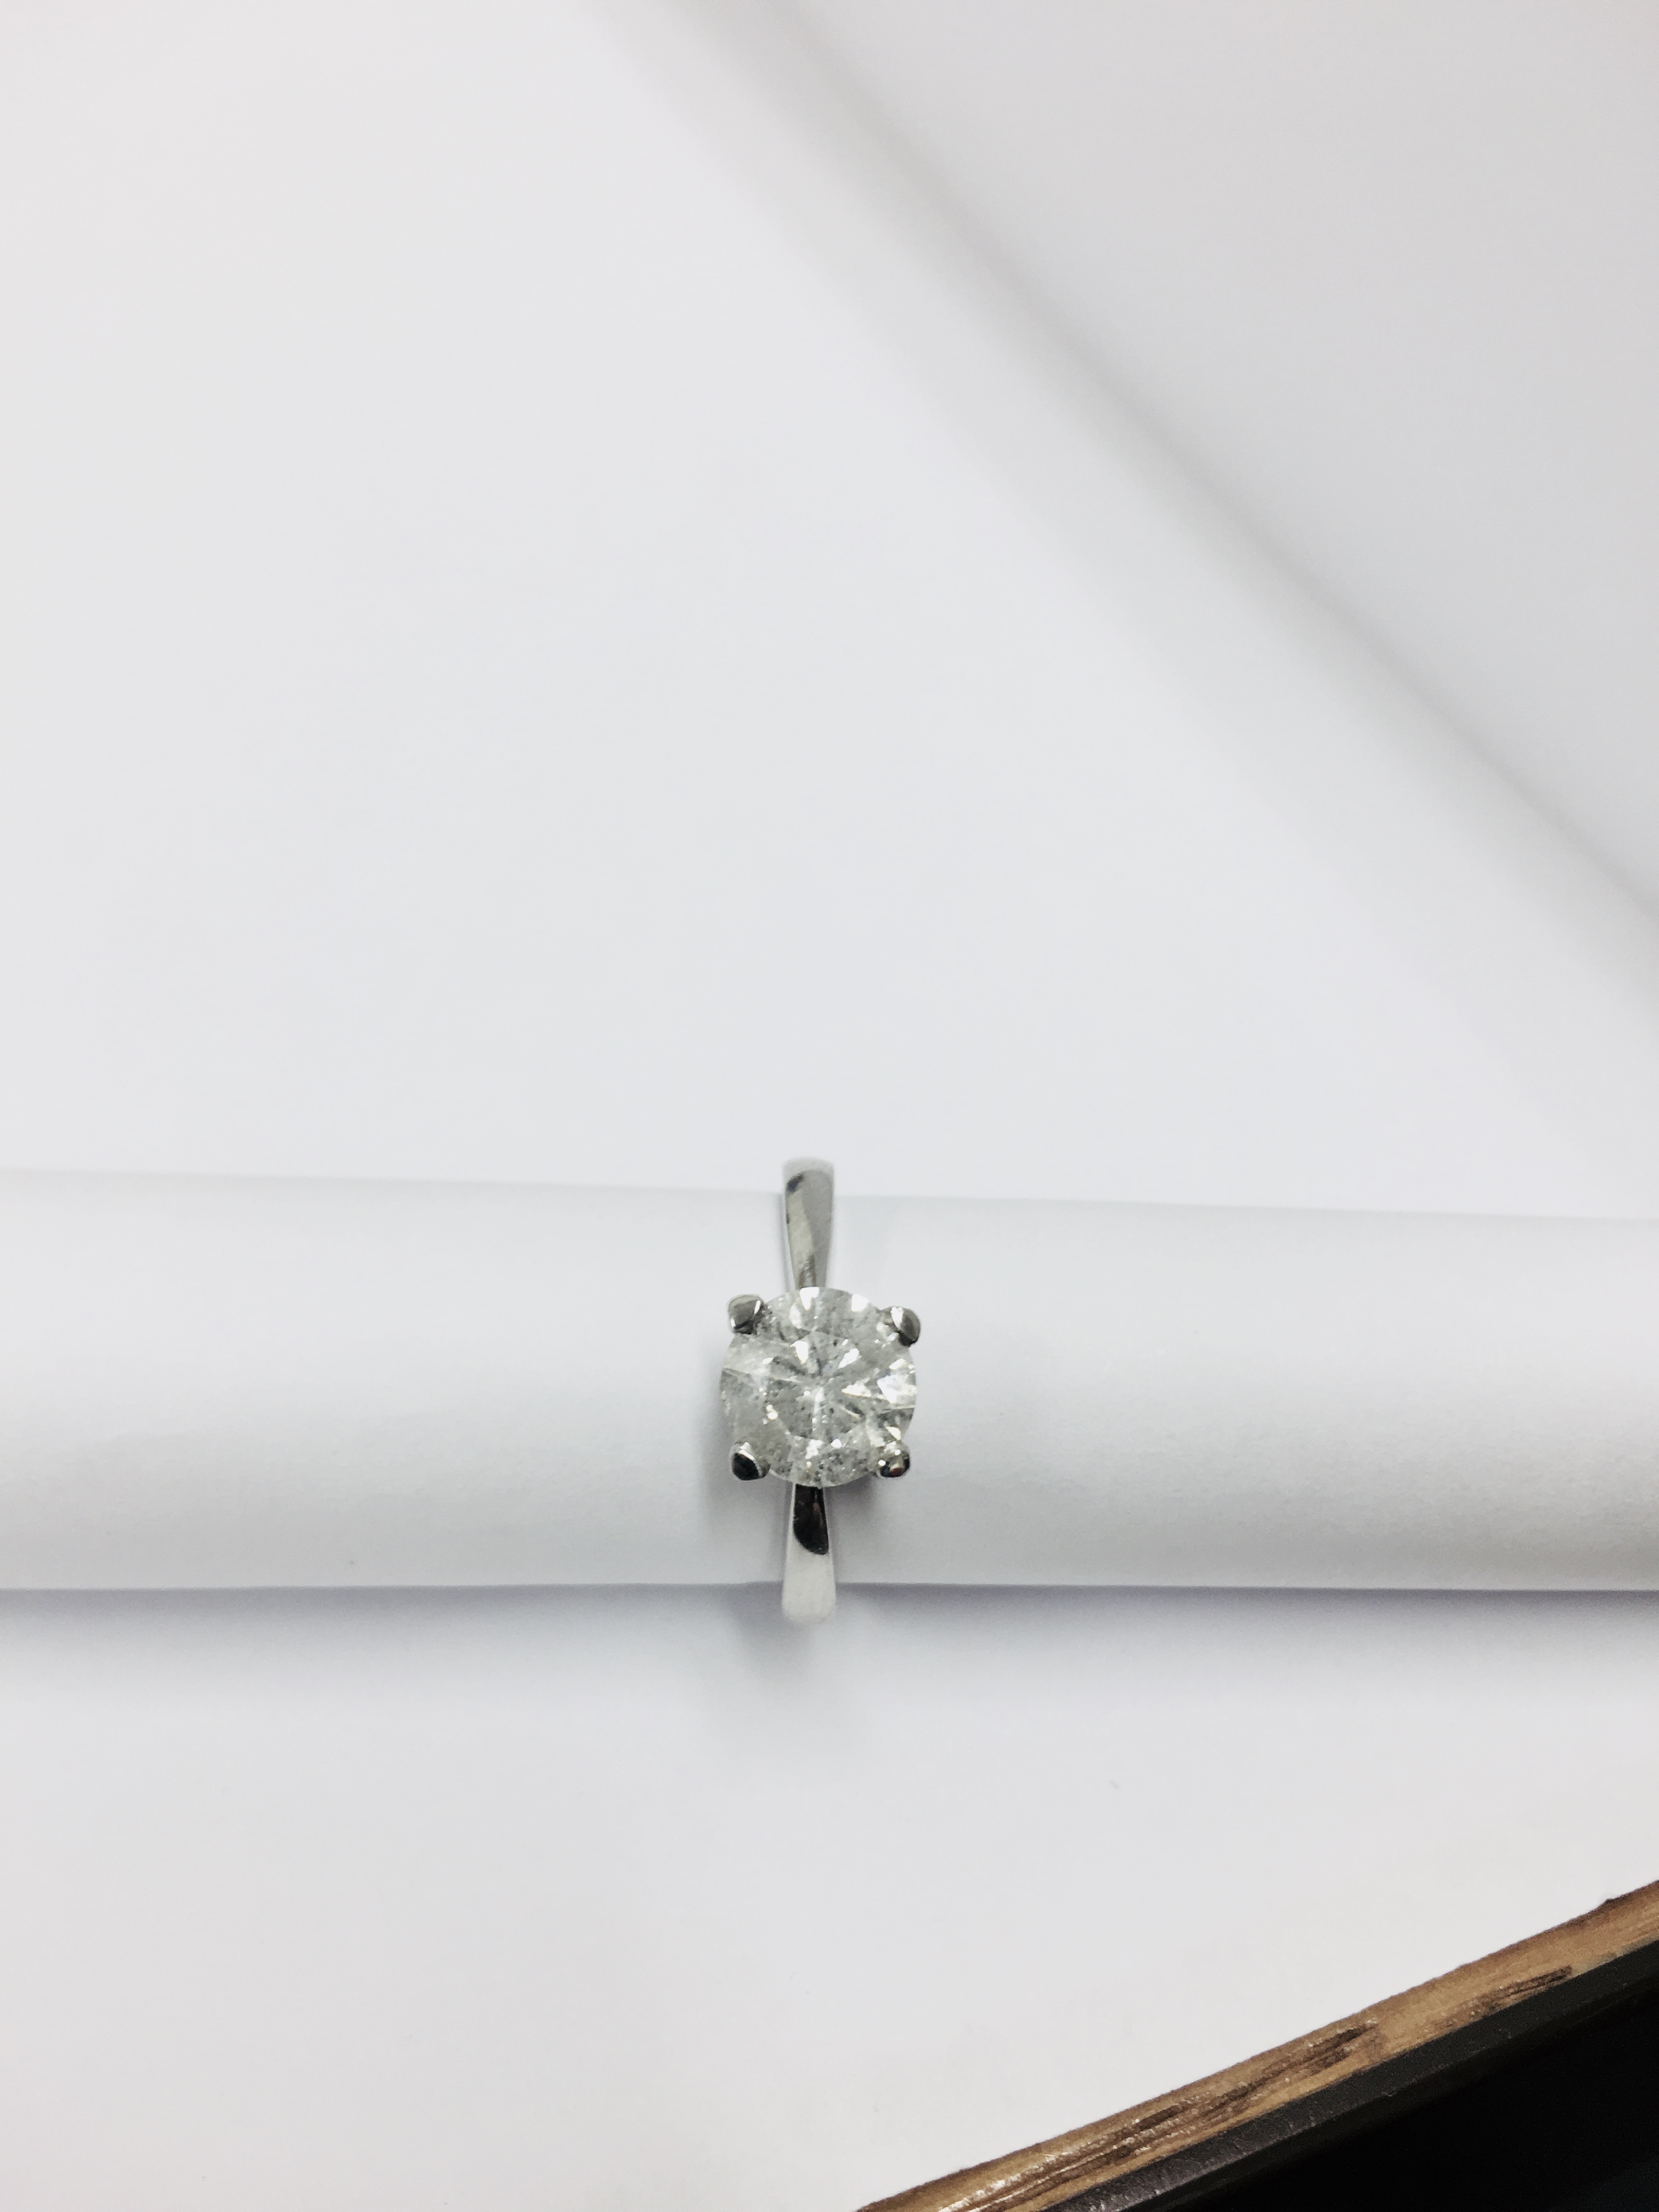 2.08ct diamond solitaire ring set in platinum - Image 6 of 48